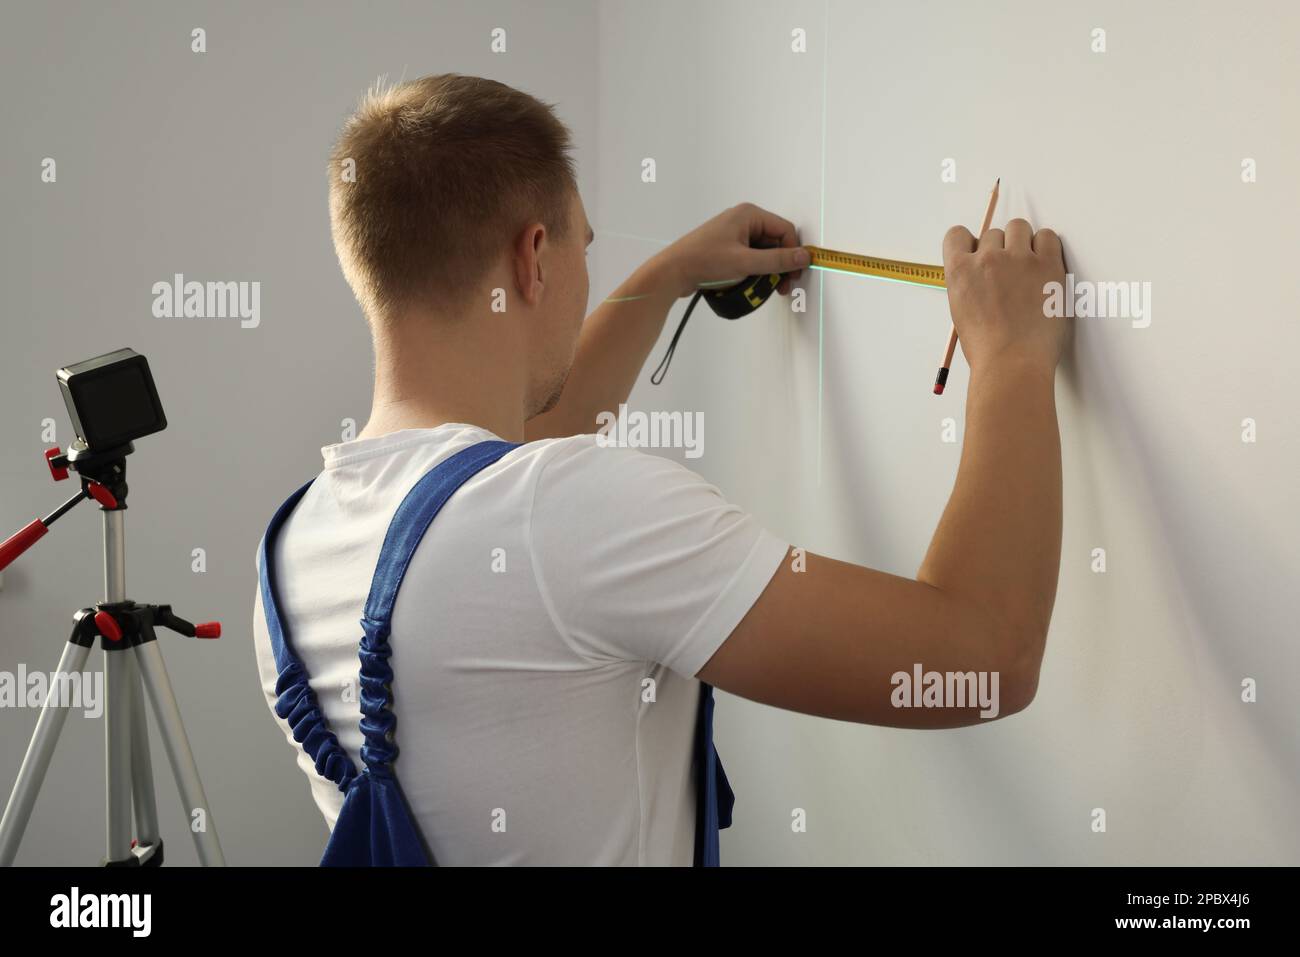 Arbeiter verwendet Kreuzlinienlaser-Nivelliergerät, Bleistift und Klebeband für genaue Messungen an leichten Wänden, Rückansicht Stockfoto